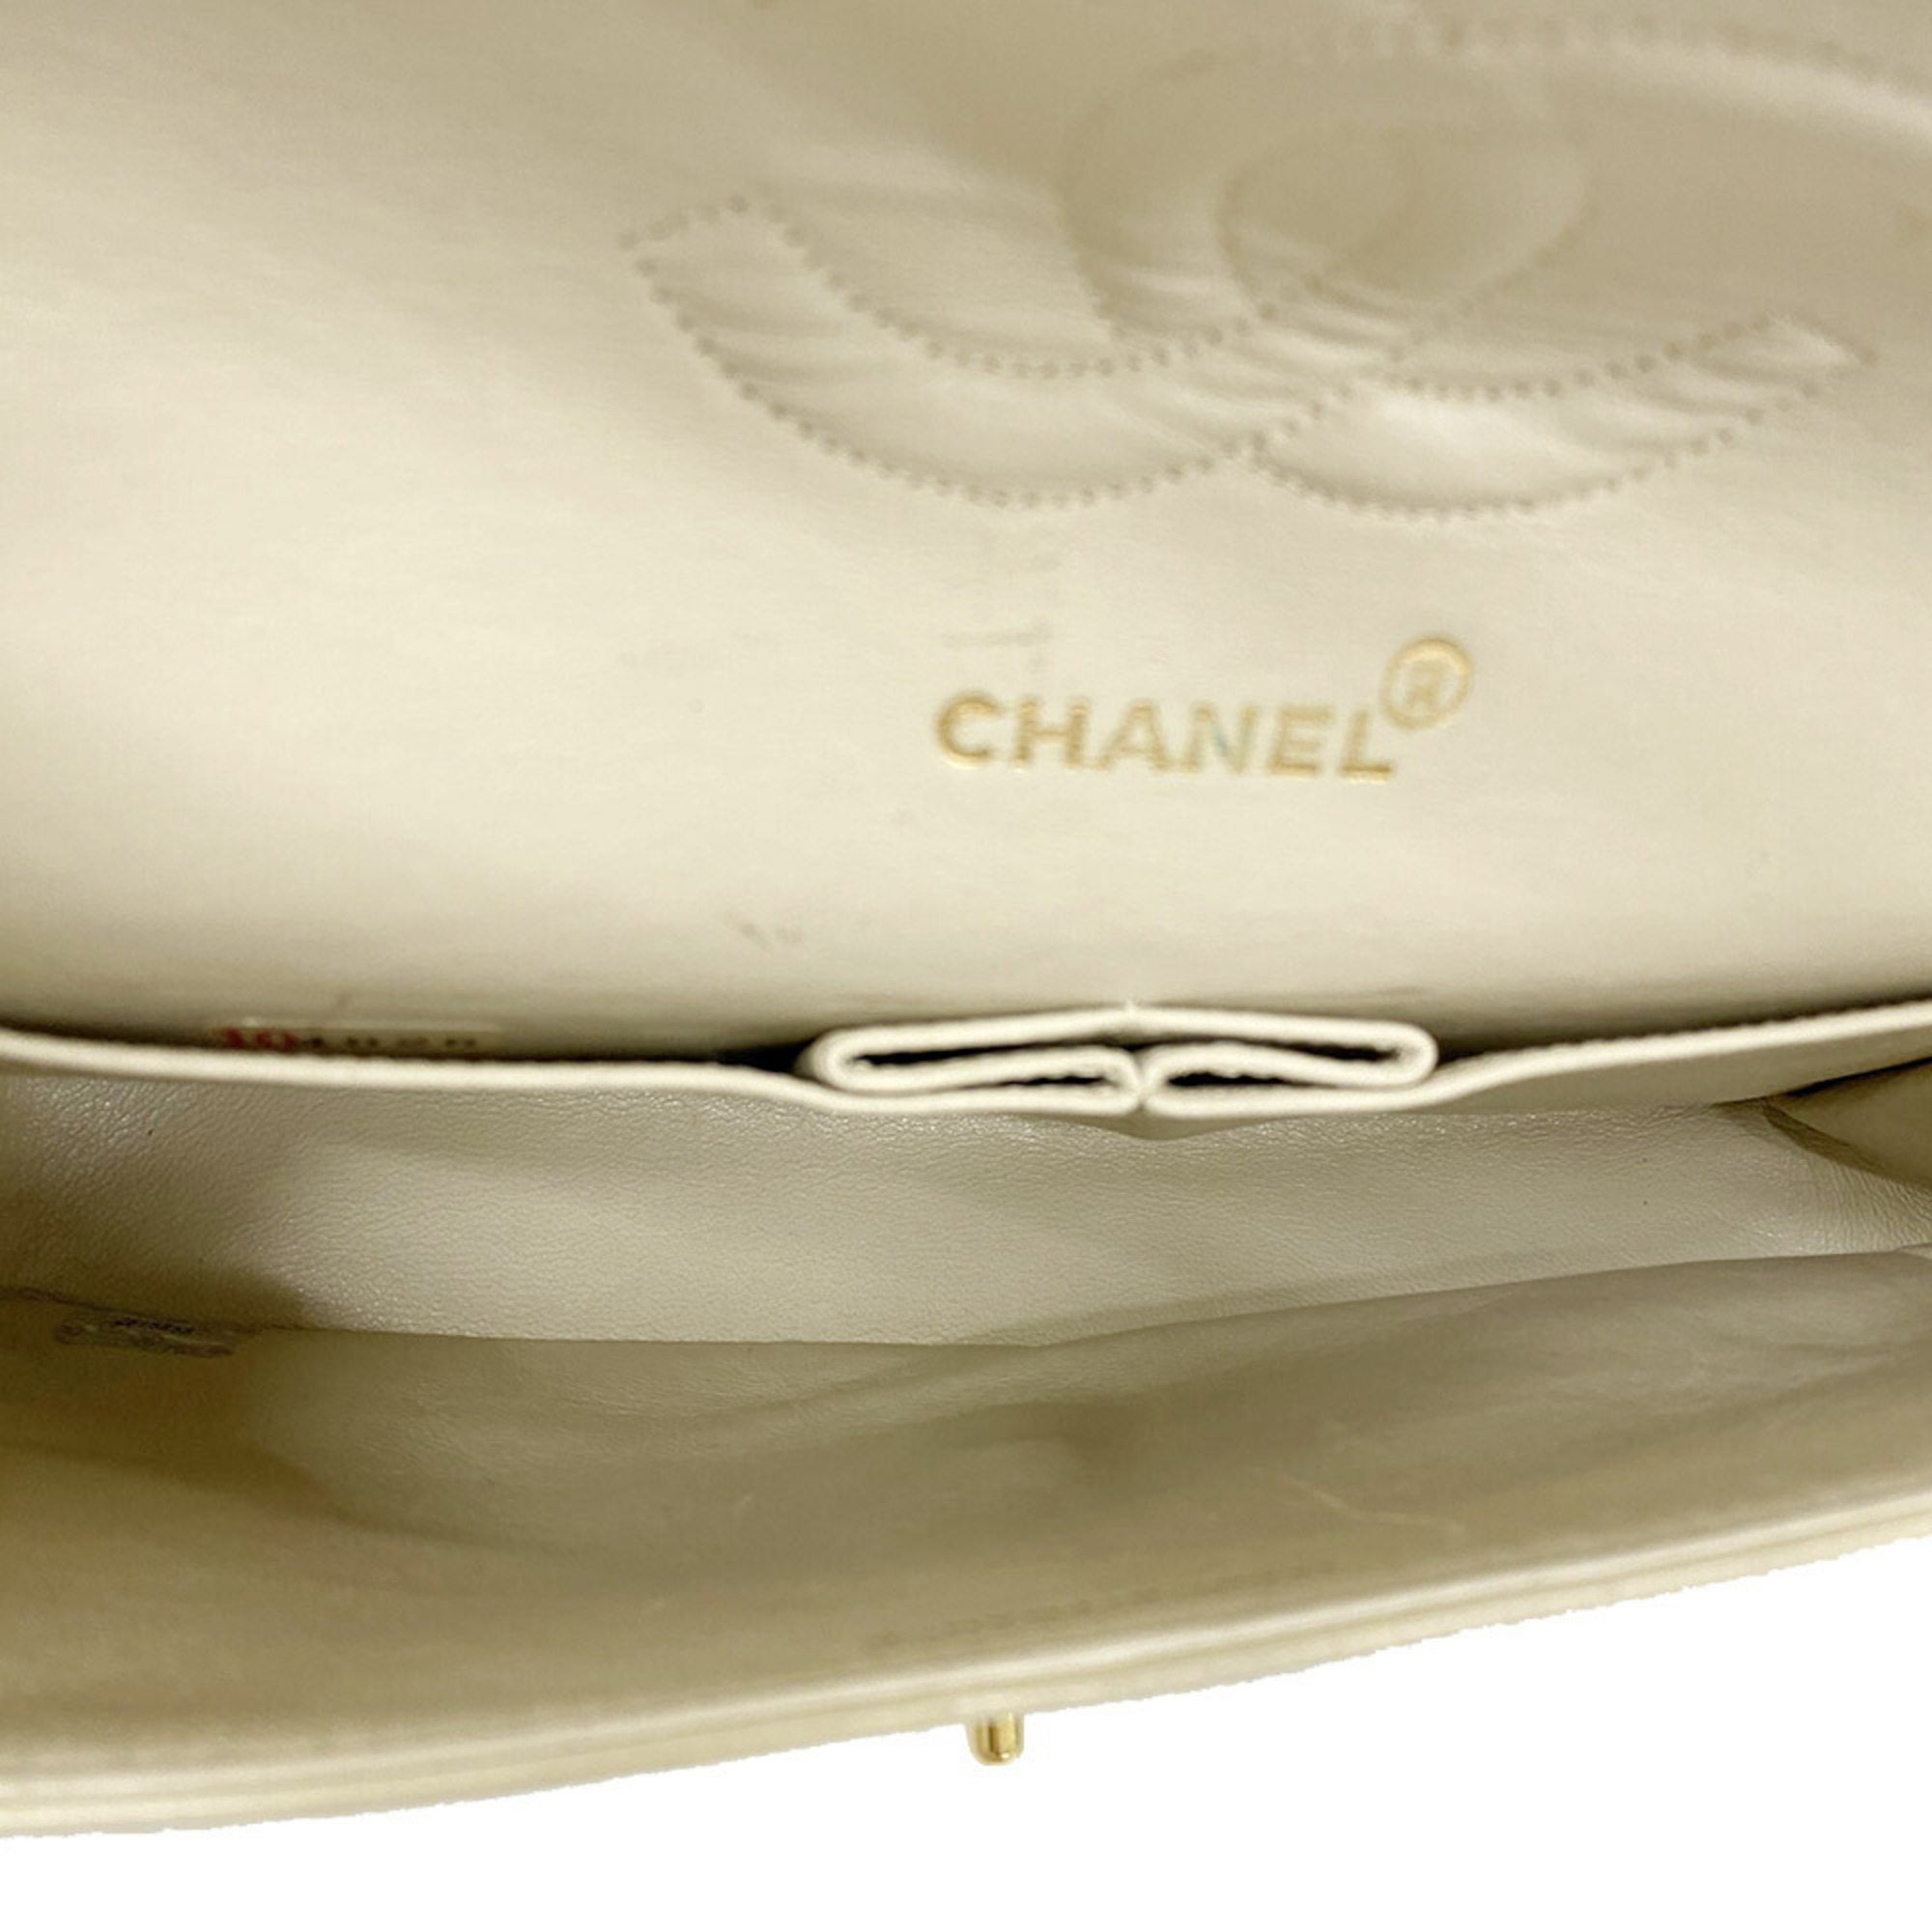 シャネル(Chanel) シャネル ショルダーバッグ マトラッセ Wフラップ Wチェーン ラムスキン アイボリー ゴールド金  レディース